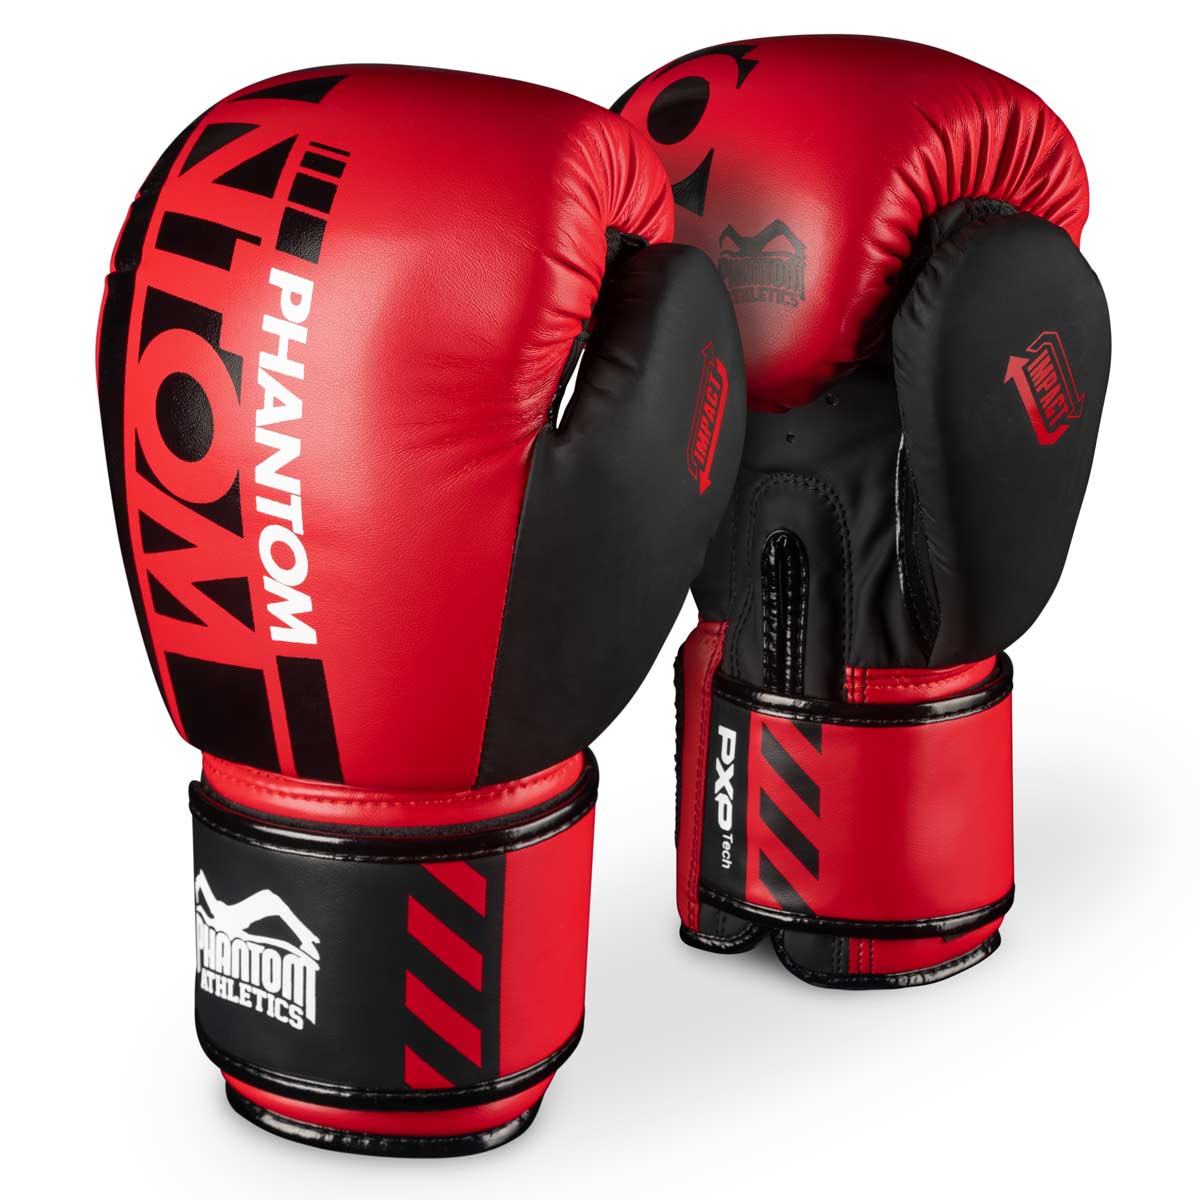 Phantom boxningshandskar APEX i begränsad RÖD upplaga. Perfekta handskar för din kampsportsträning som MMA, Muay Thai, Thaiboxning, K1 eller boxning.